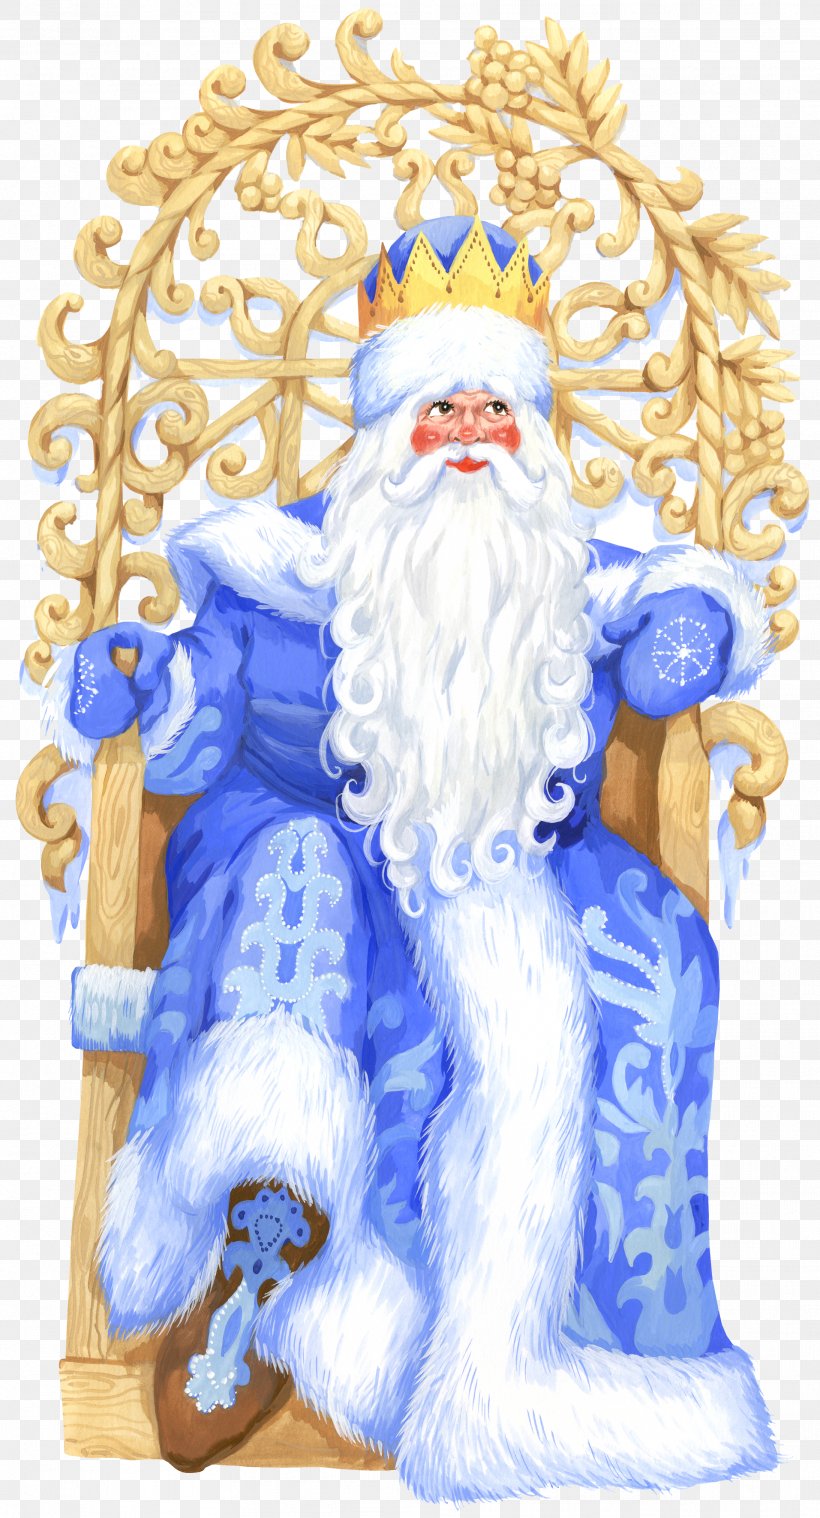 Santa Claus Ded Moroz Snegurochka Christmas Clip Art, PNG, 1913x3543px, Santa Claus, Christmas, Christmas Carol, Christmas Ornament, Ded Moroz Download Free